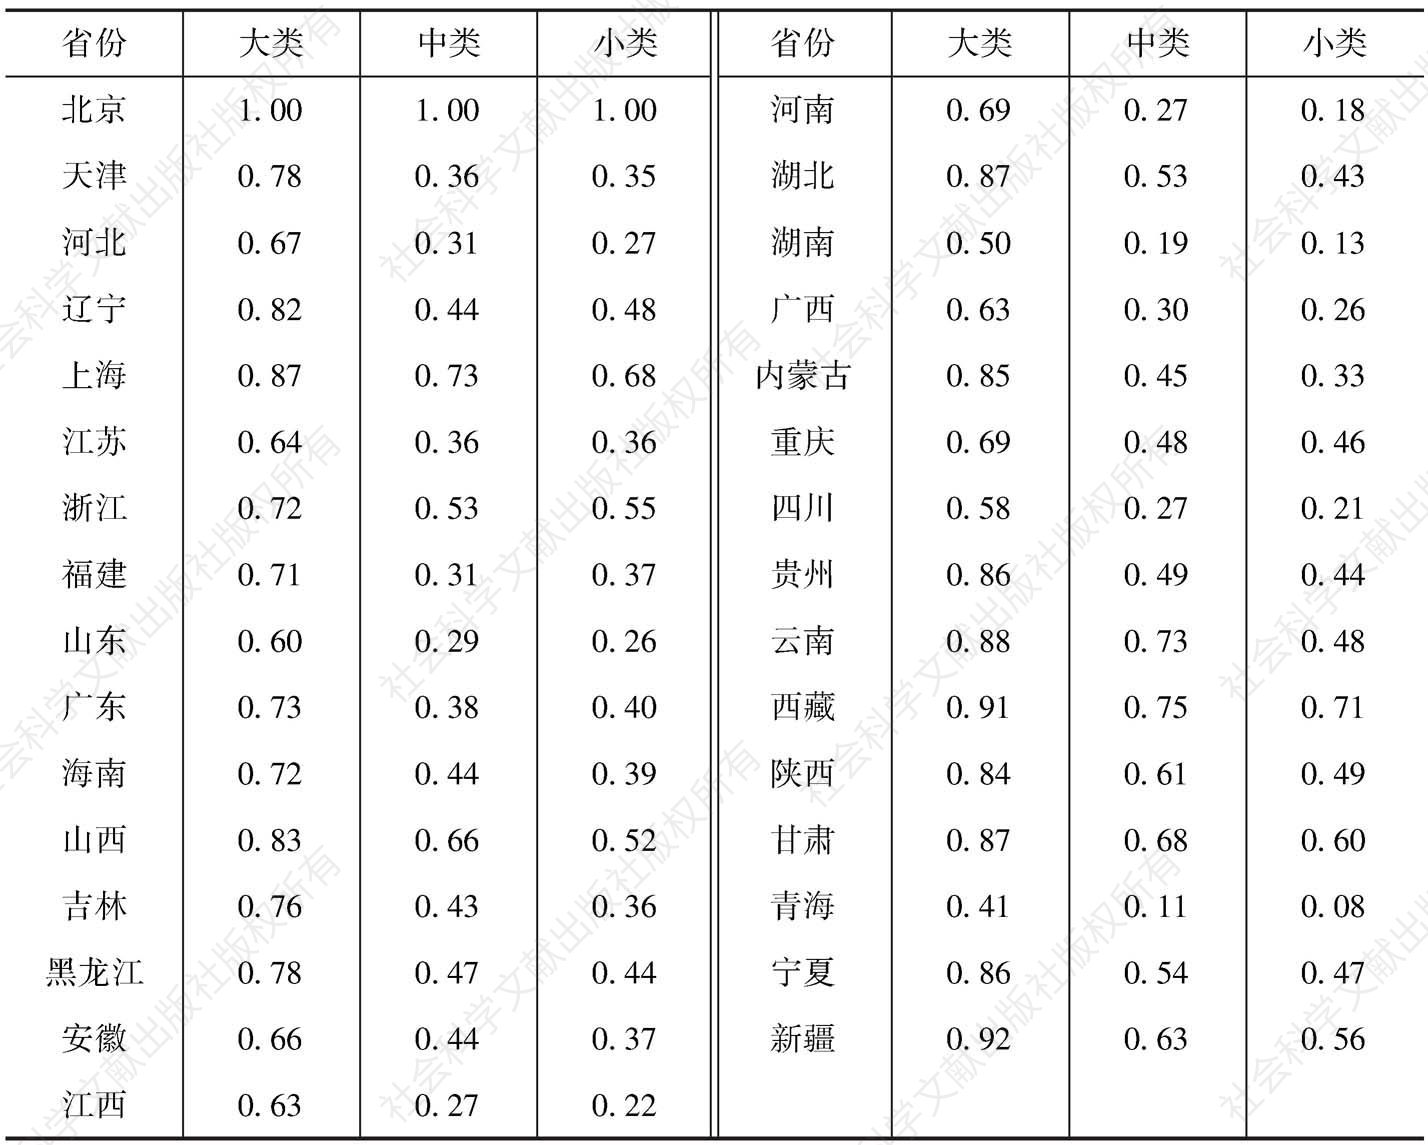 表10-6 2013年各省市（自治区）文化产业营业收入各类构成的相似系数（以北京为基准）